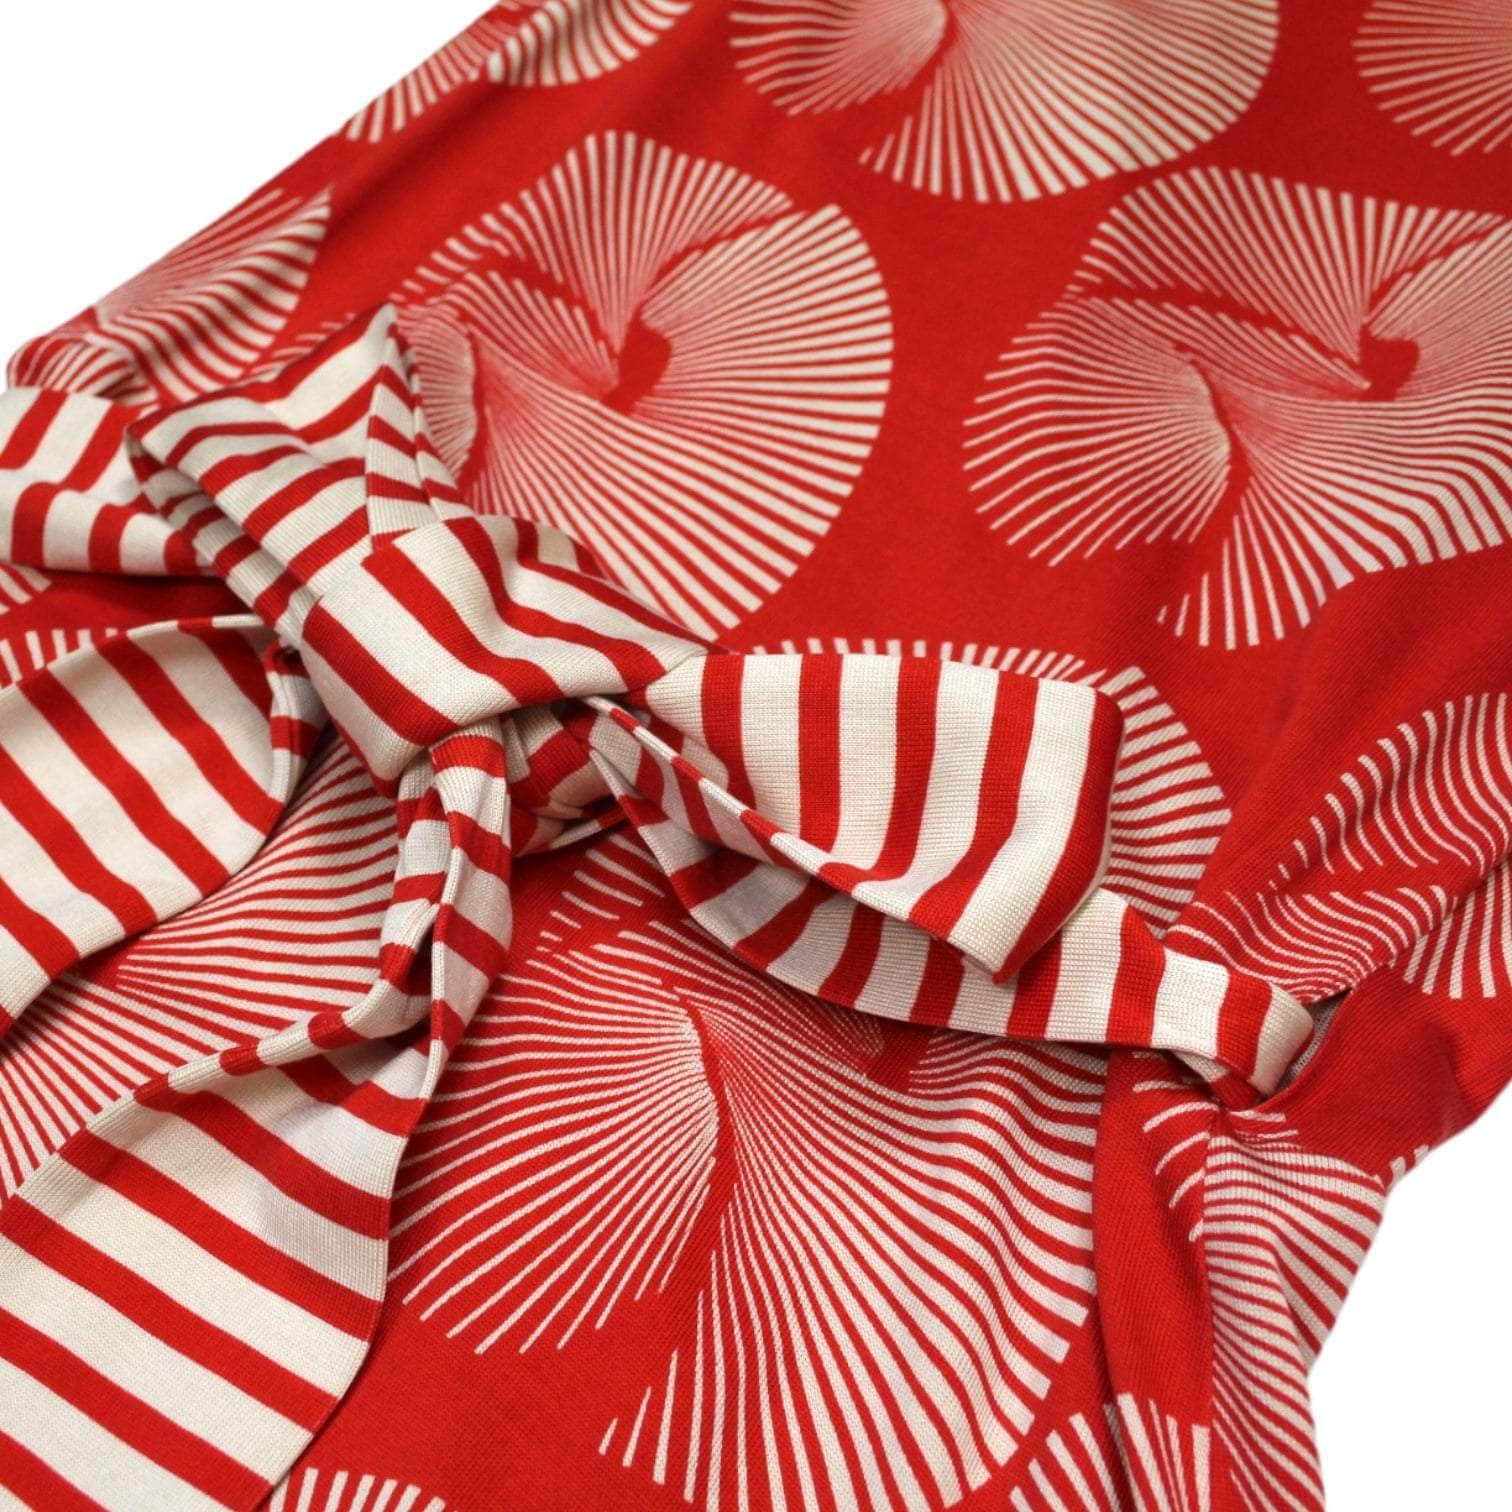 Diane Von Furstenberg Red Silk Wrap Dress